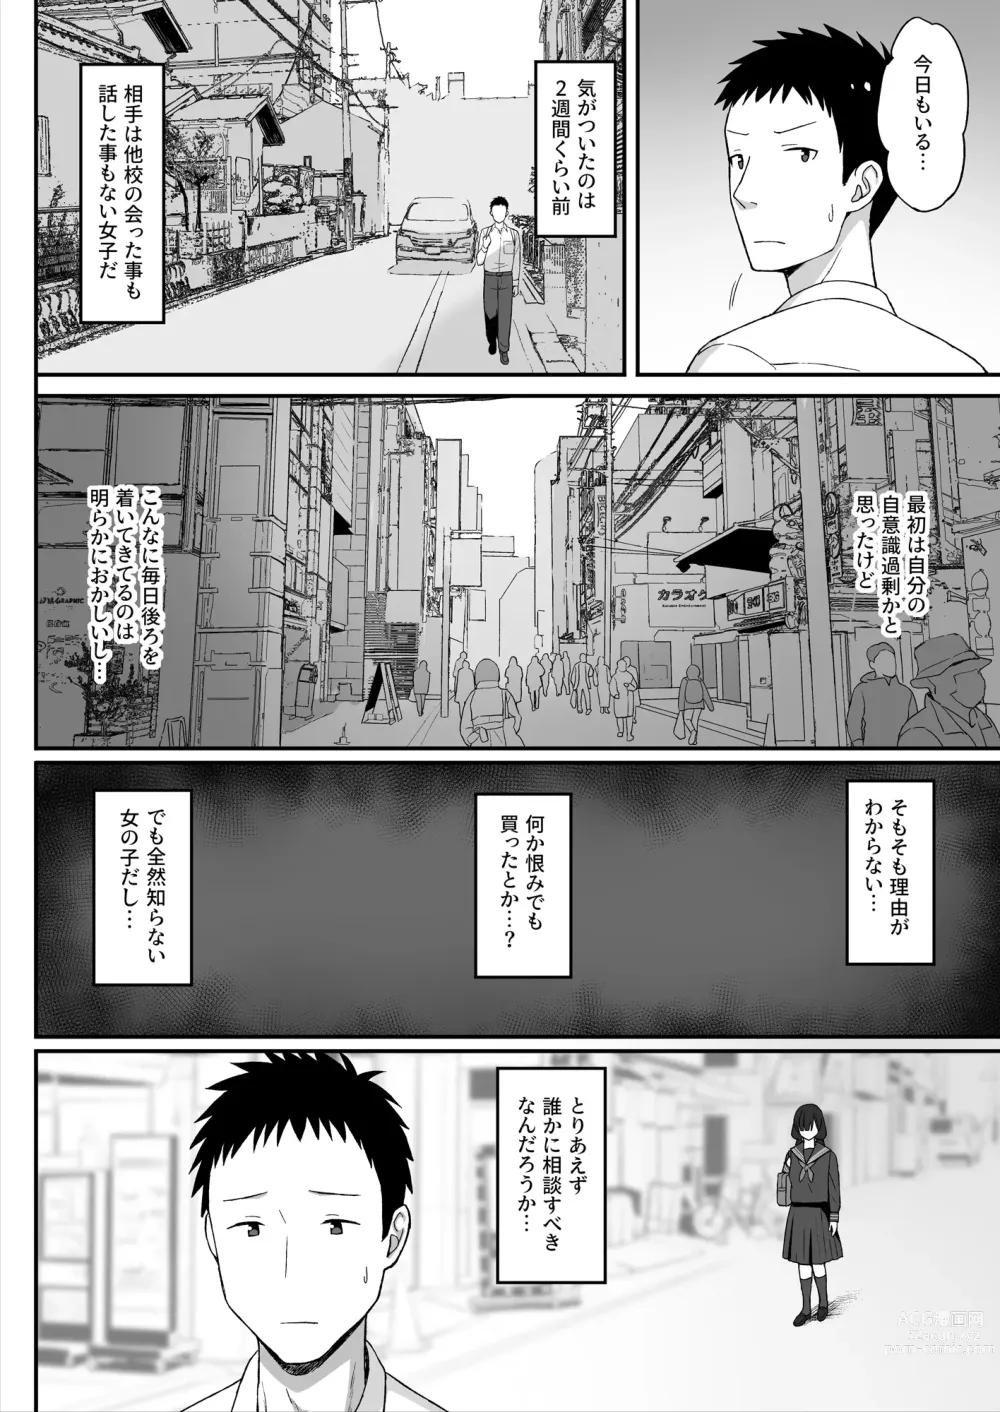 Page 6 of doujinshi 地味巨乳のストーカー女に告白されたのでヤりまくってみた話